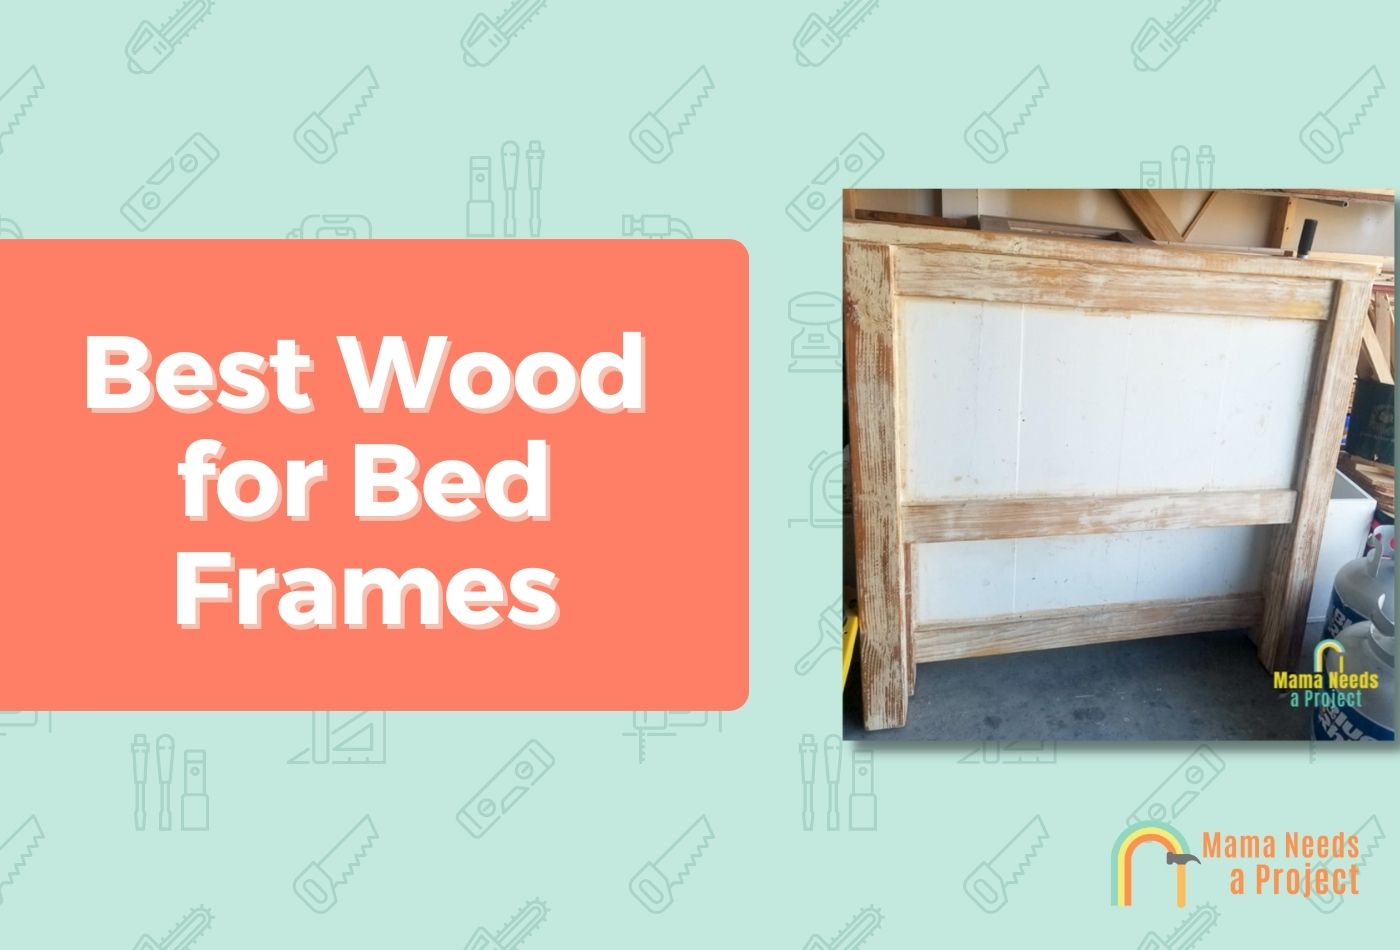 Best Wood for Bed Frames